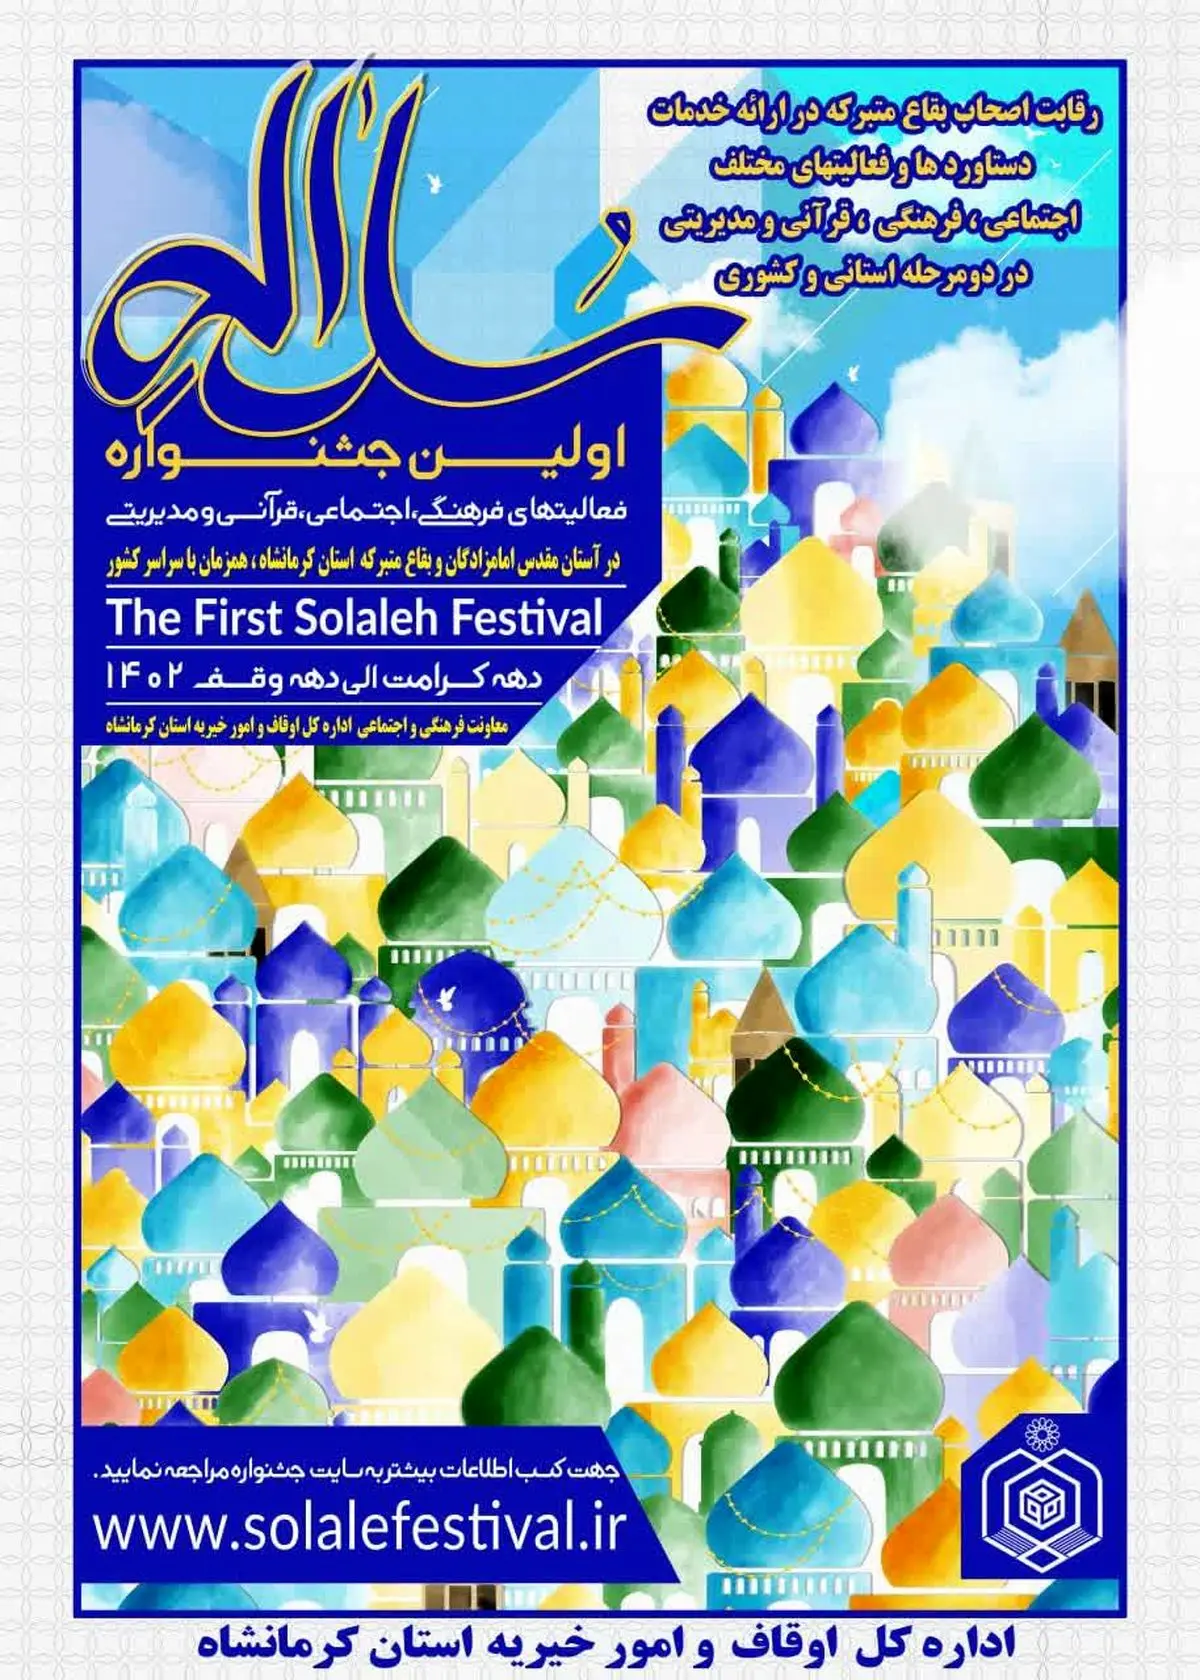 برگزاری جشنواره سراسری «سلاله» ویژه فعالان بقاع متبرکه و امامزادگان استان کرمانشاه
